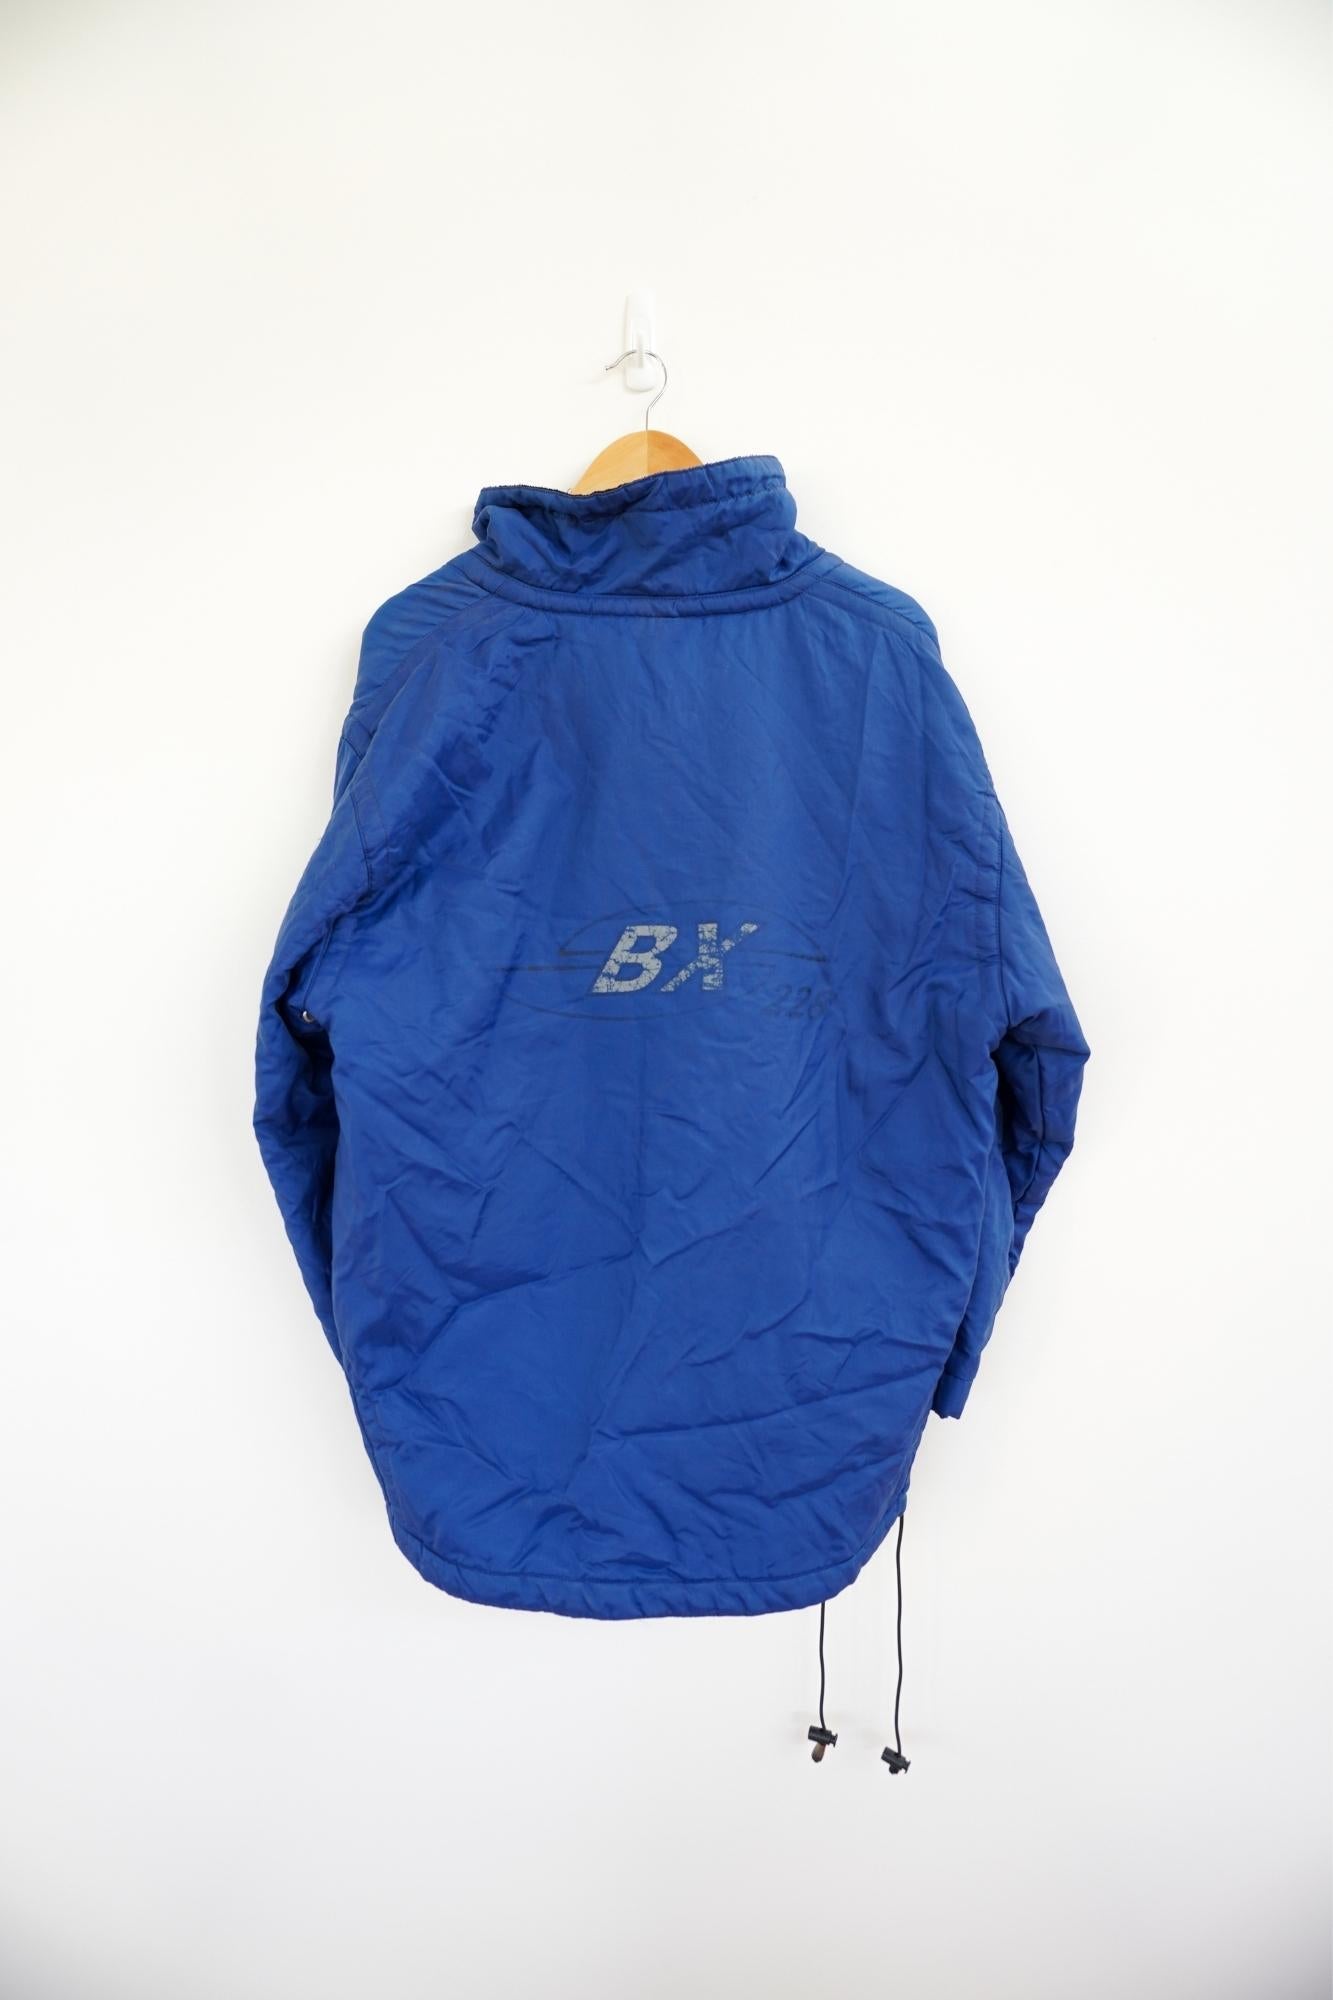 BX 228 Blue Vintage Ski Jacket